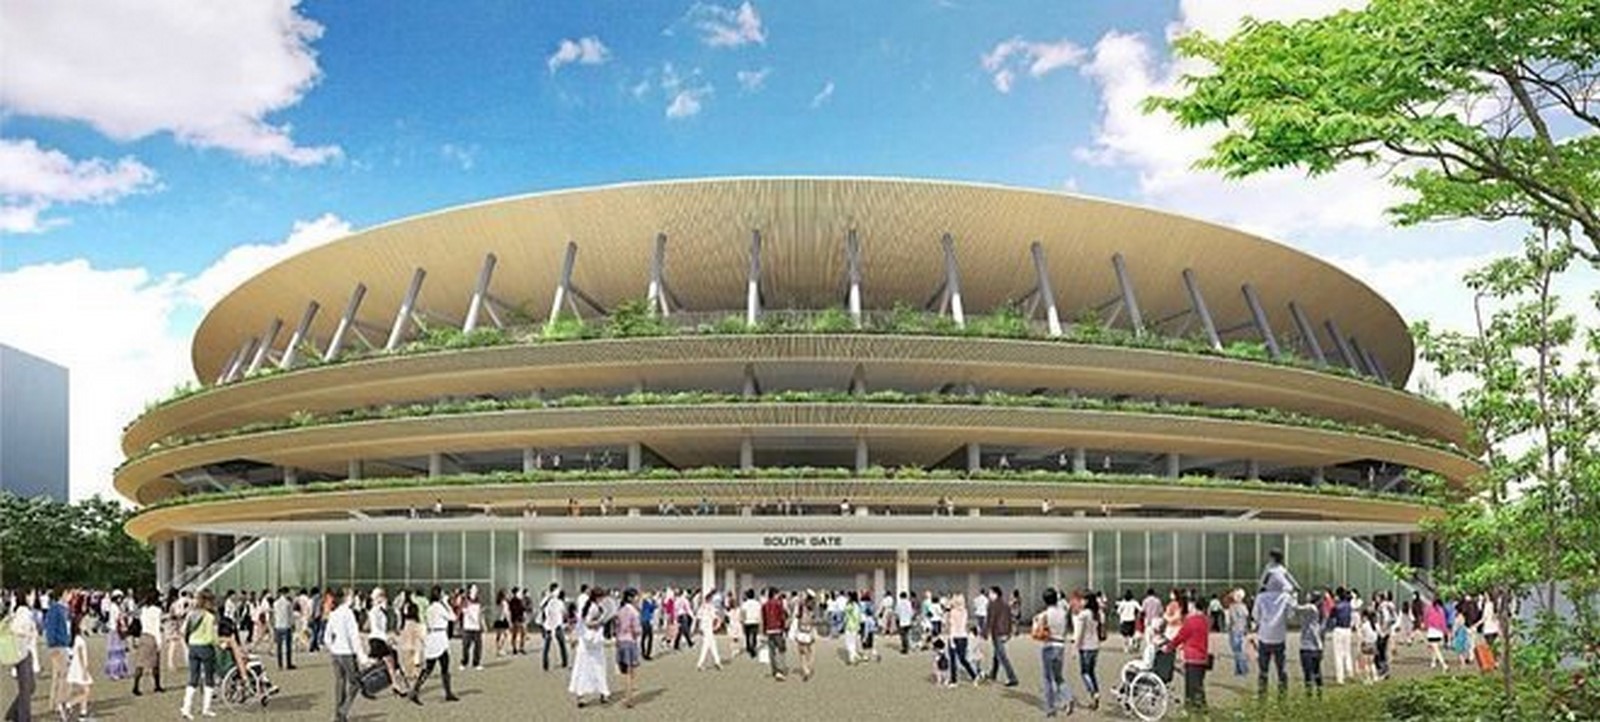 Japan National Stadium - Sheet2